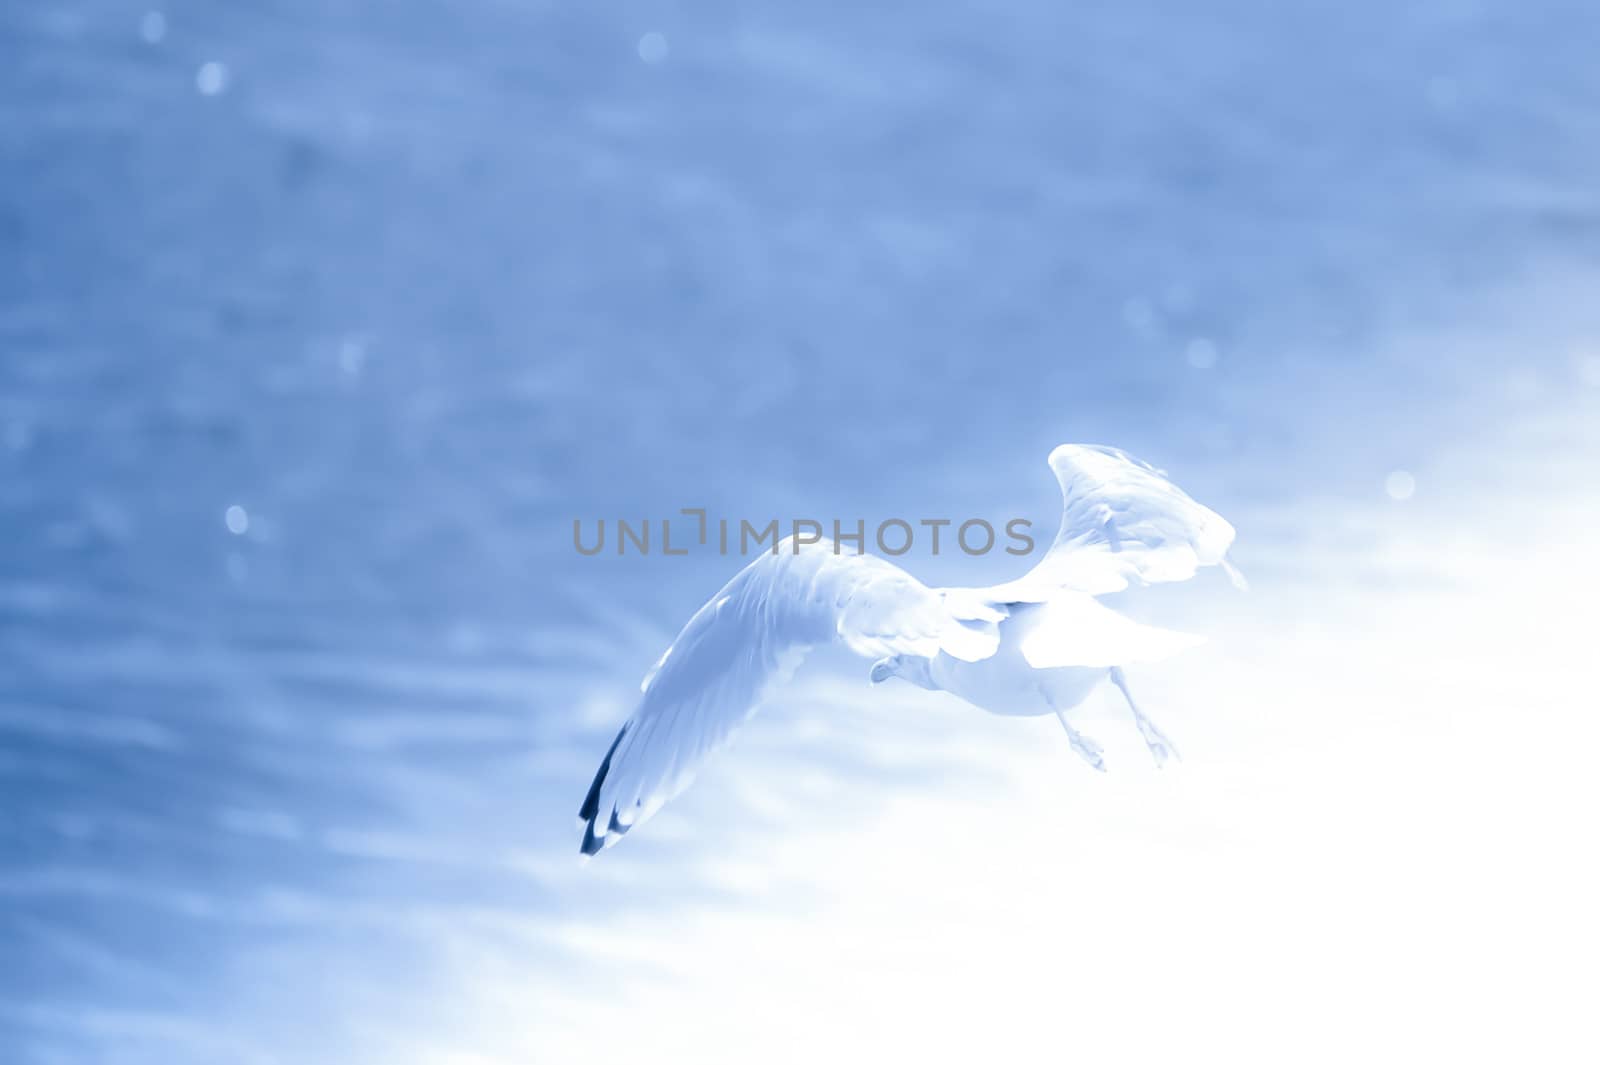 seabird in flight over a sparkling blue ocean